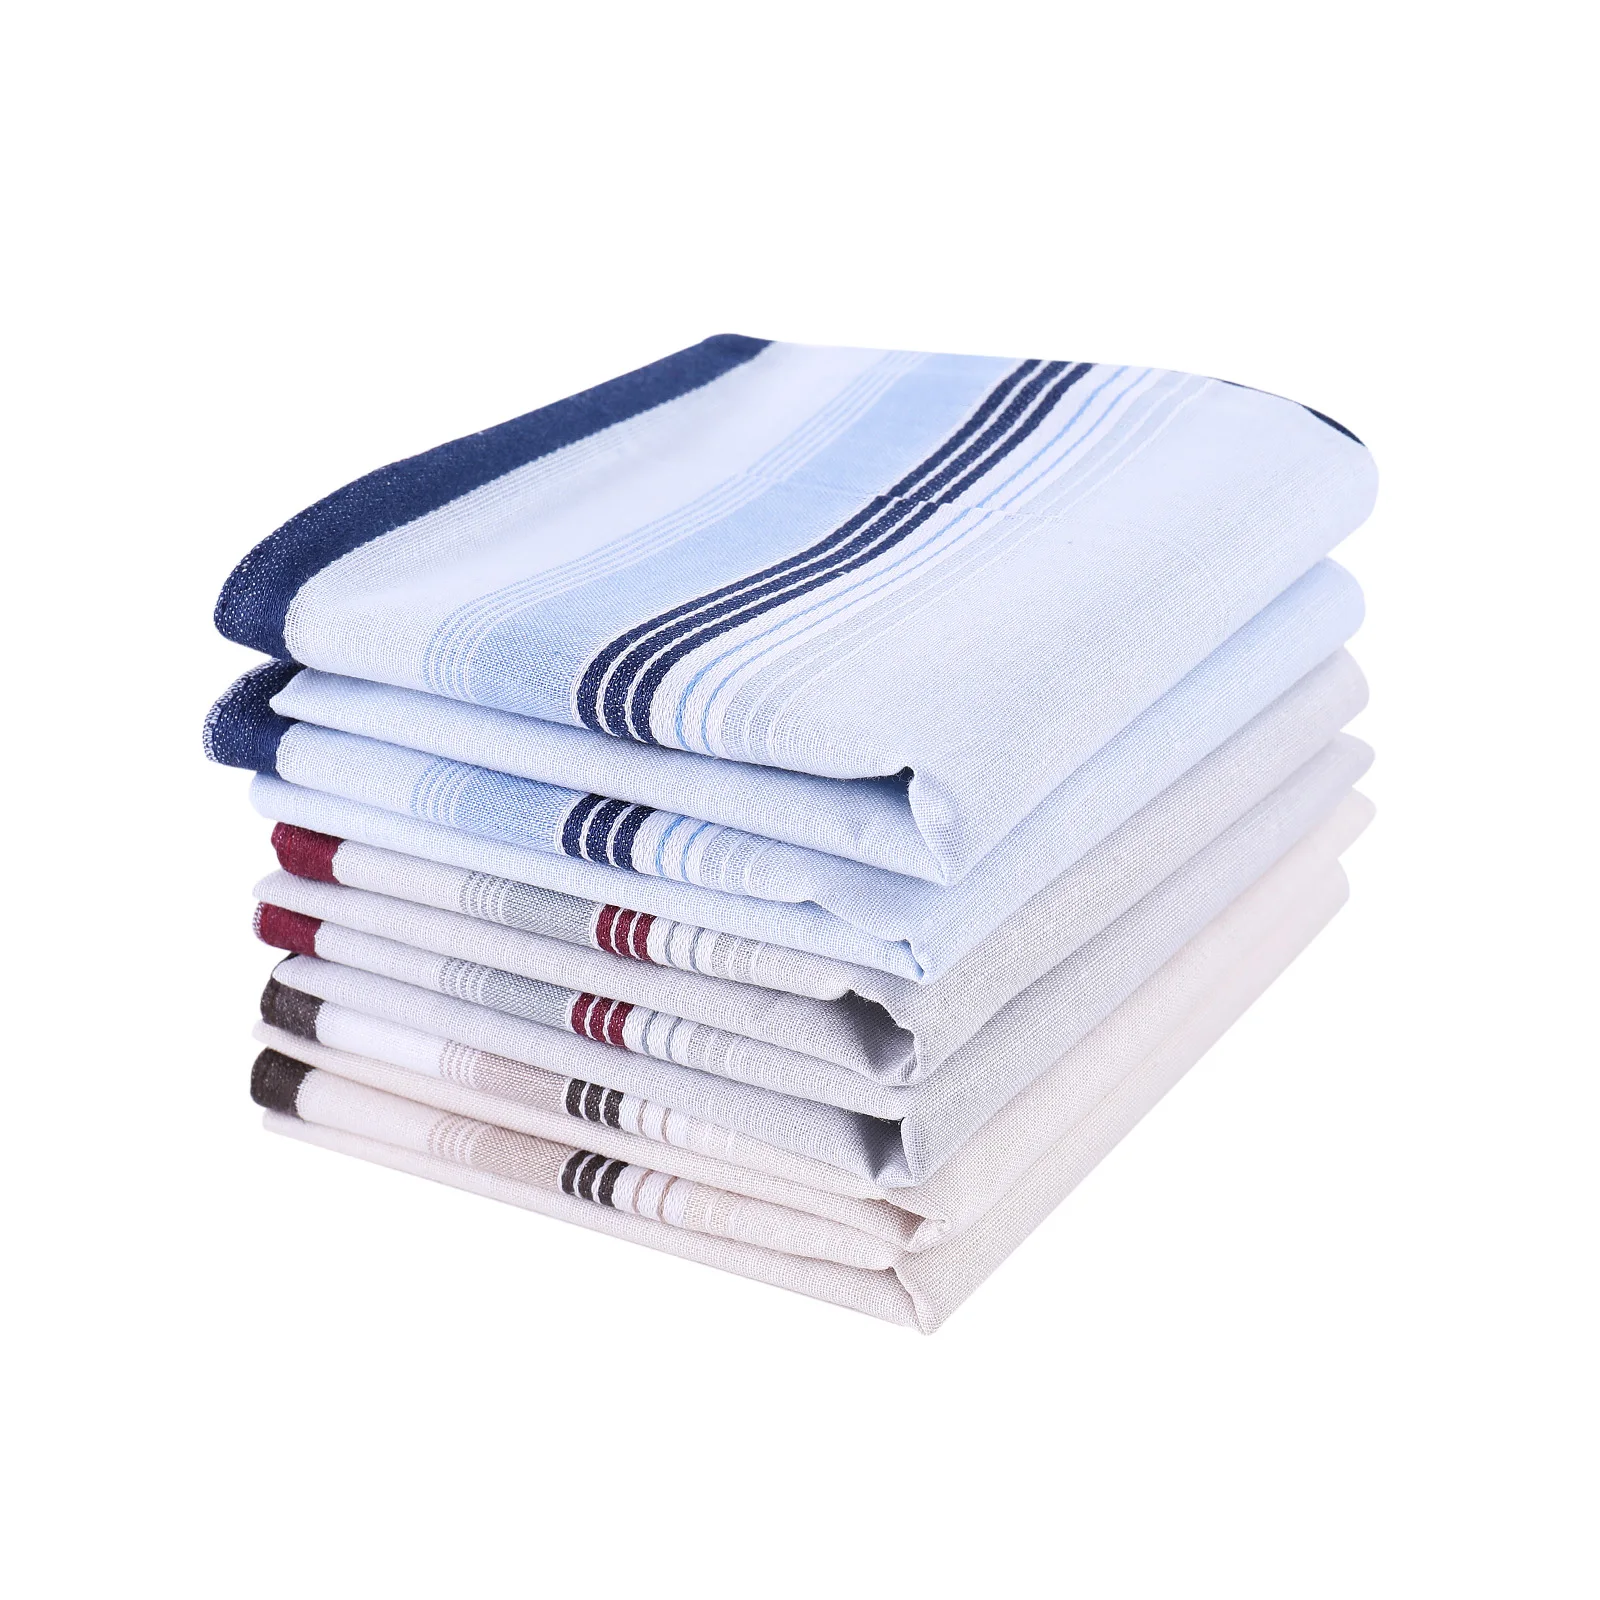 Mens White Handkerchiefs Fabric Handkerchiefs with Stripes 100% Cotton 40cm*40cm